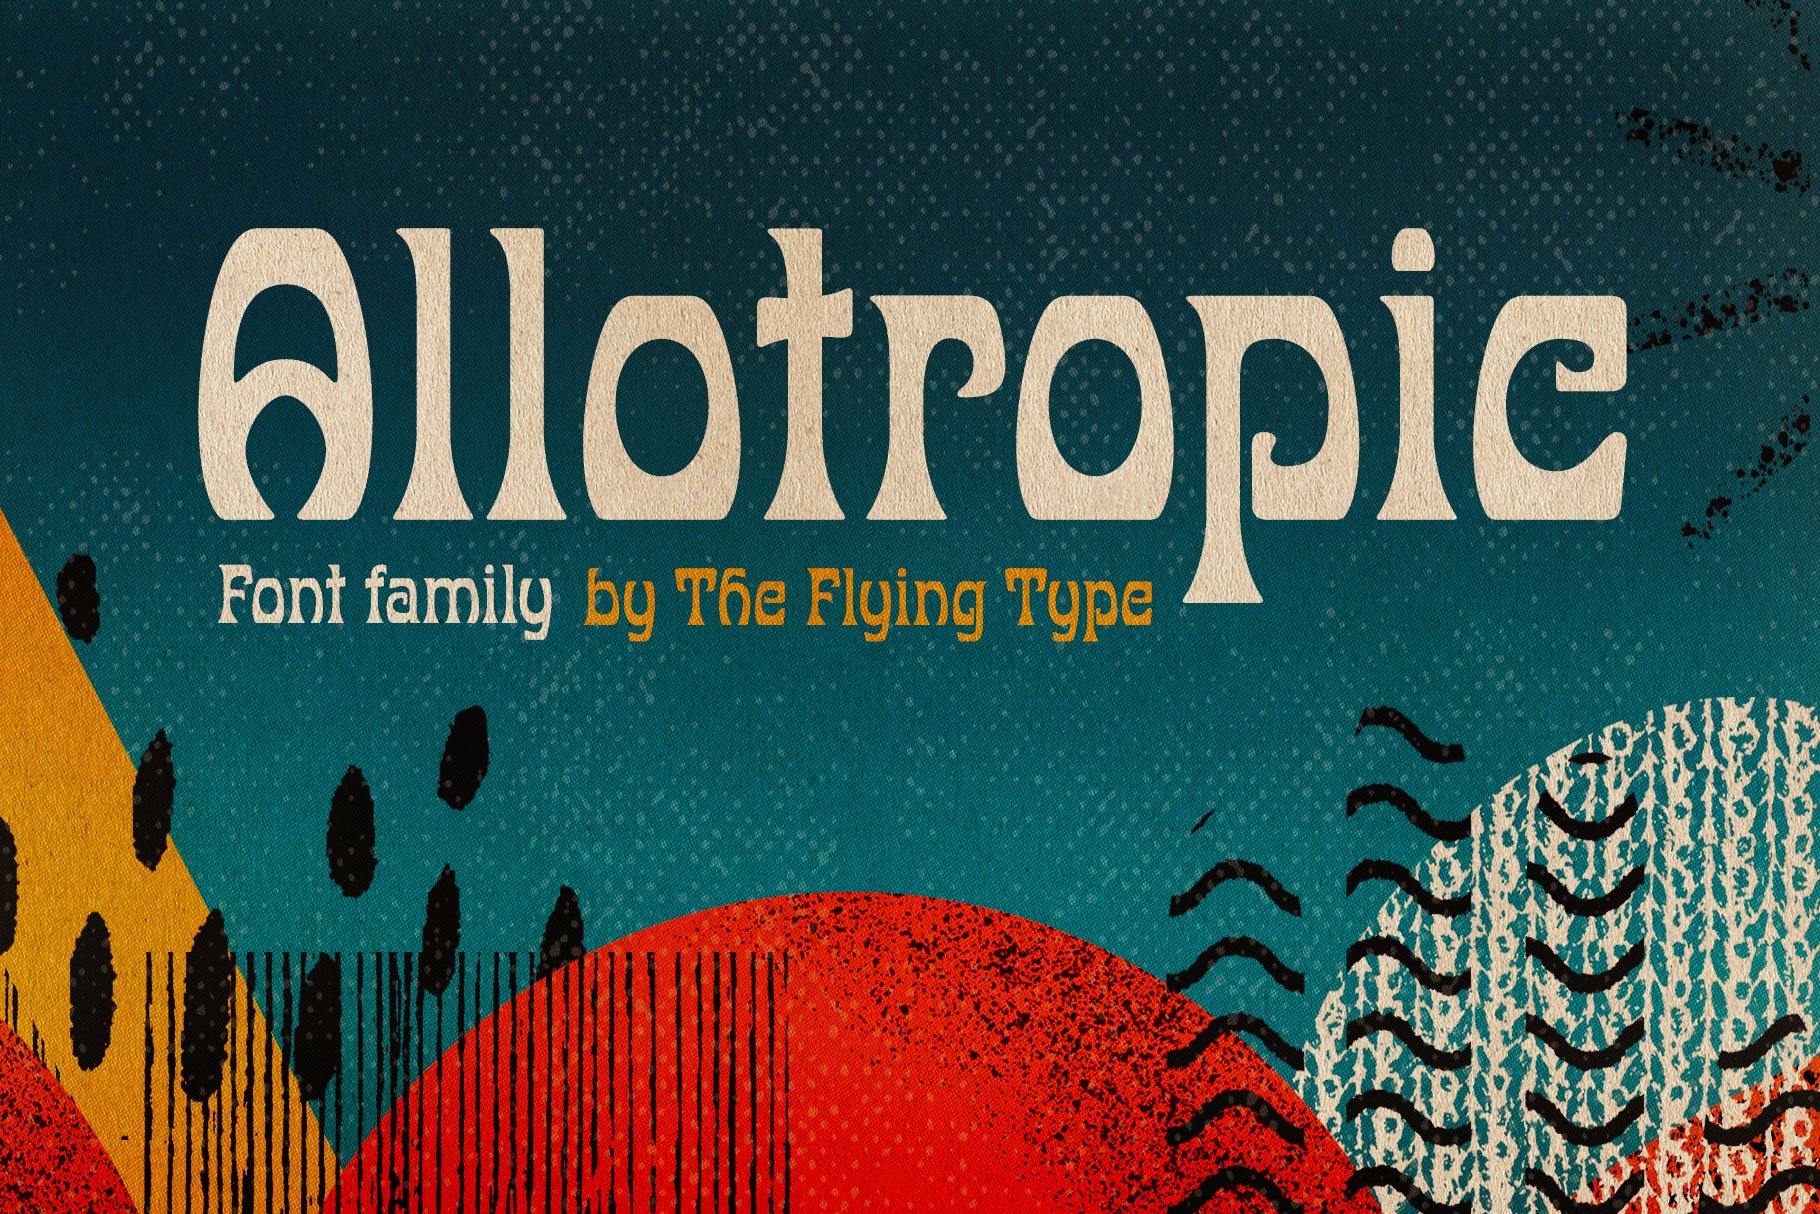 Allotropic | Expressive Retro Family cover image.